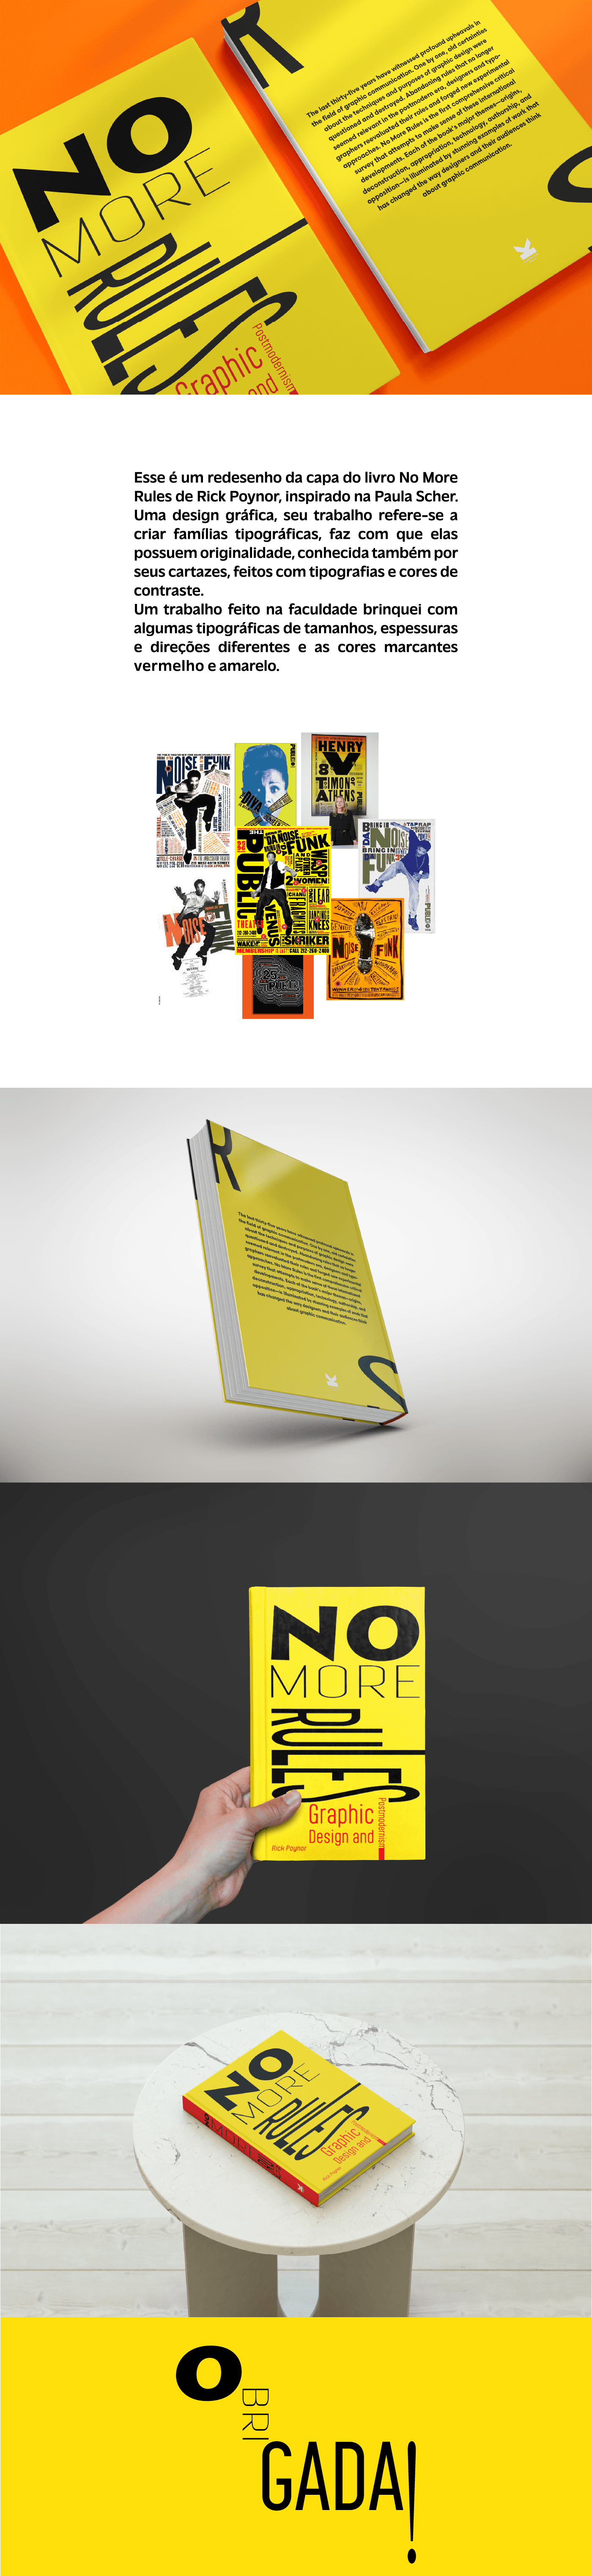 designer graphic editorial book editorial design  typography   Graphic Designer redesenho redesign